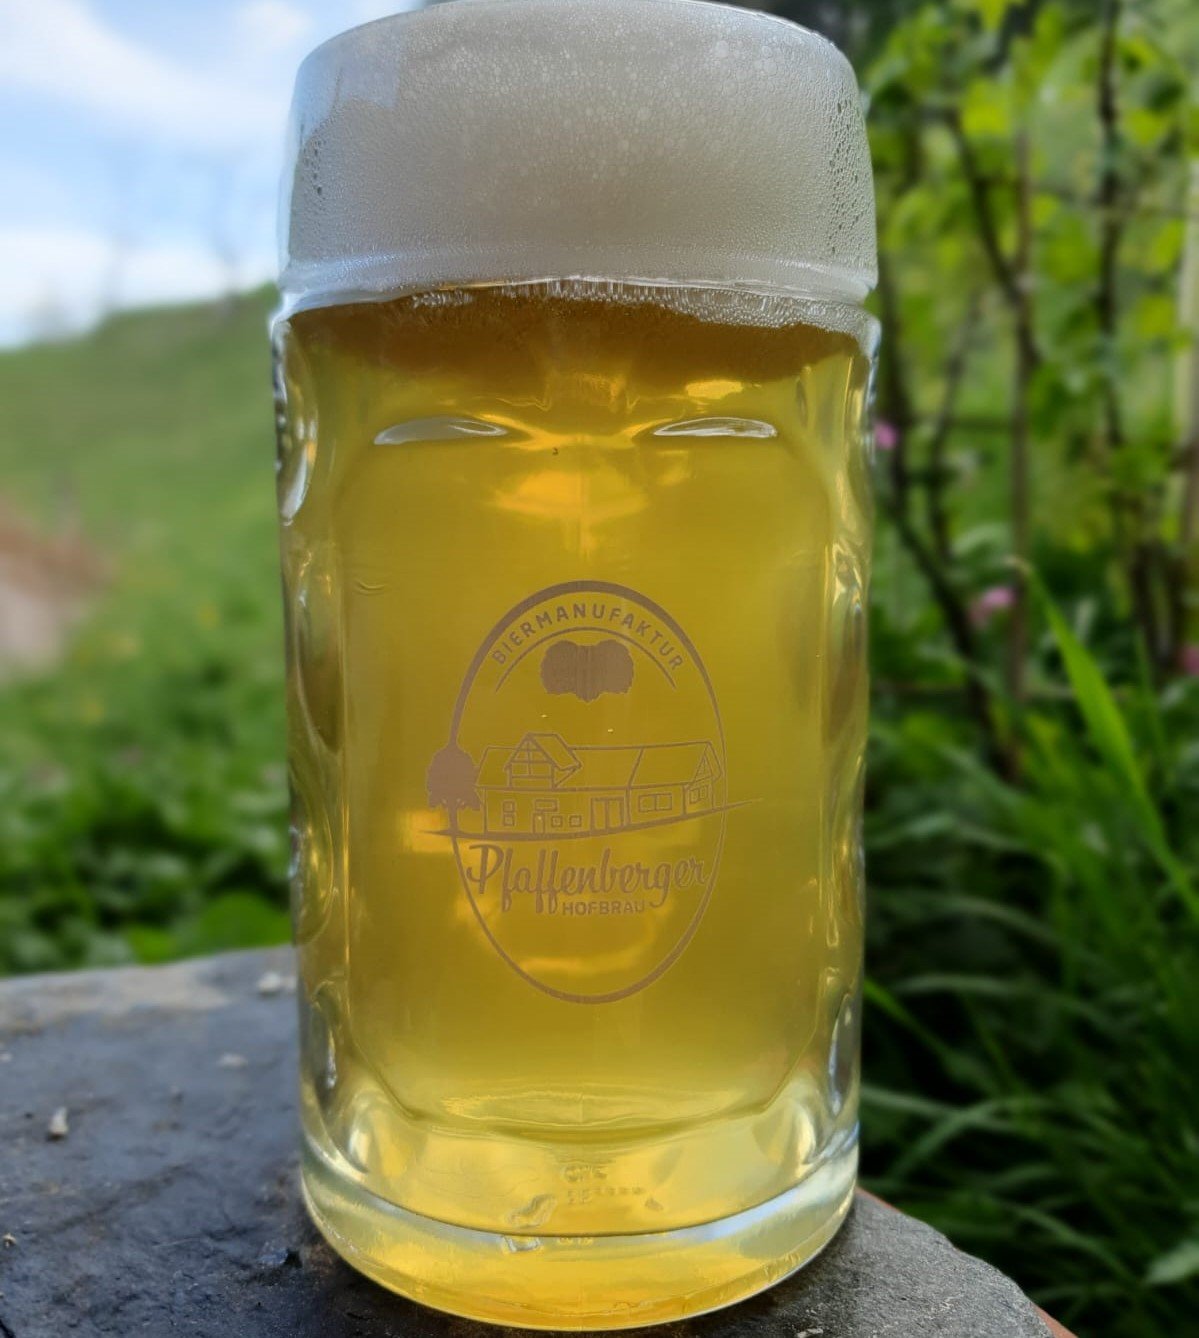 Brauerei Pfaffenberger Hofbräu, Zell im Wiesental